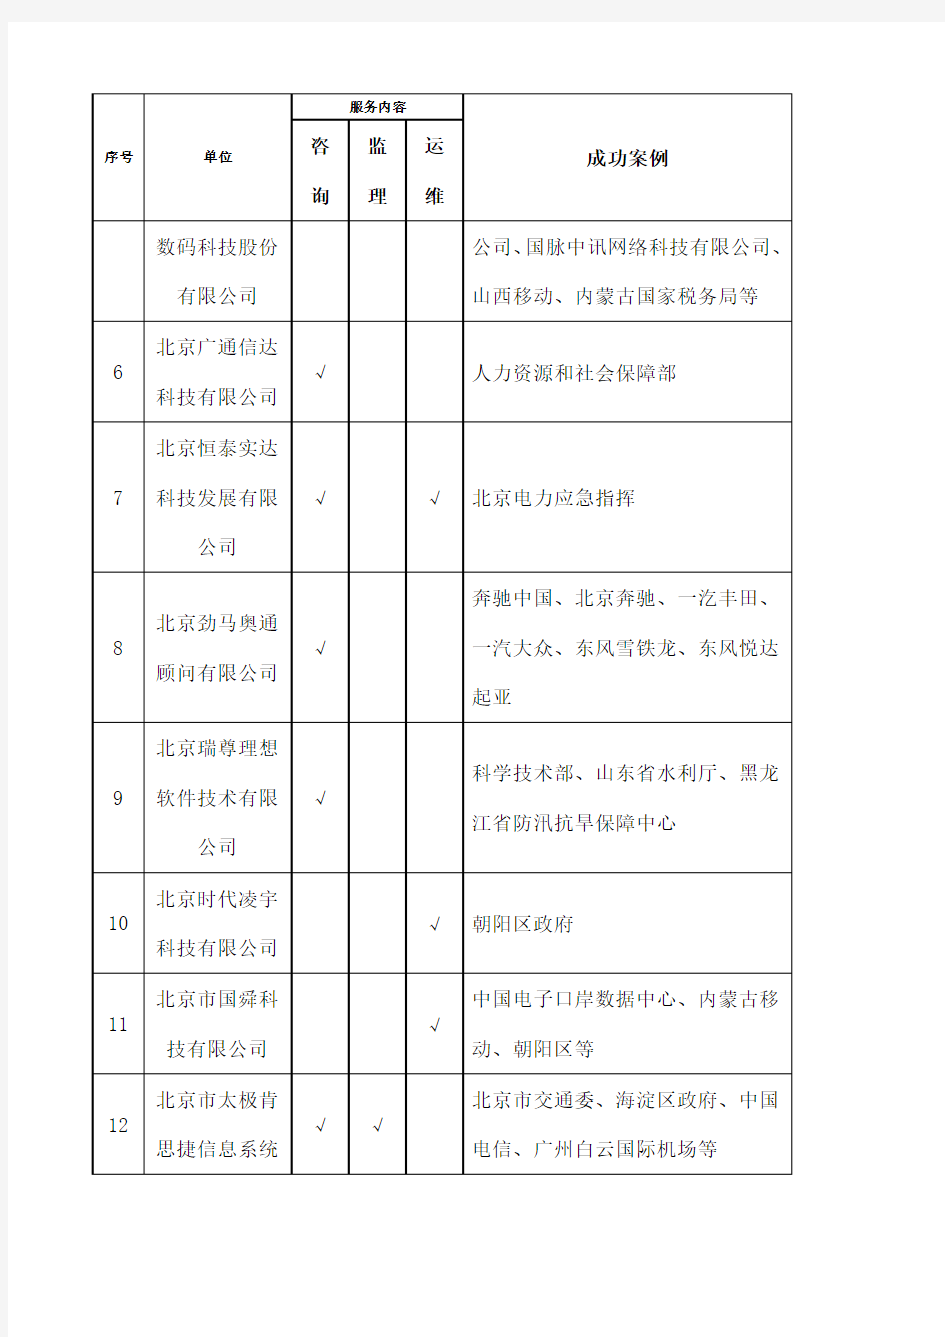 北京市政务信息化服务企业名录和案例第一批